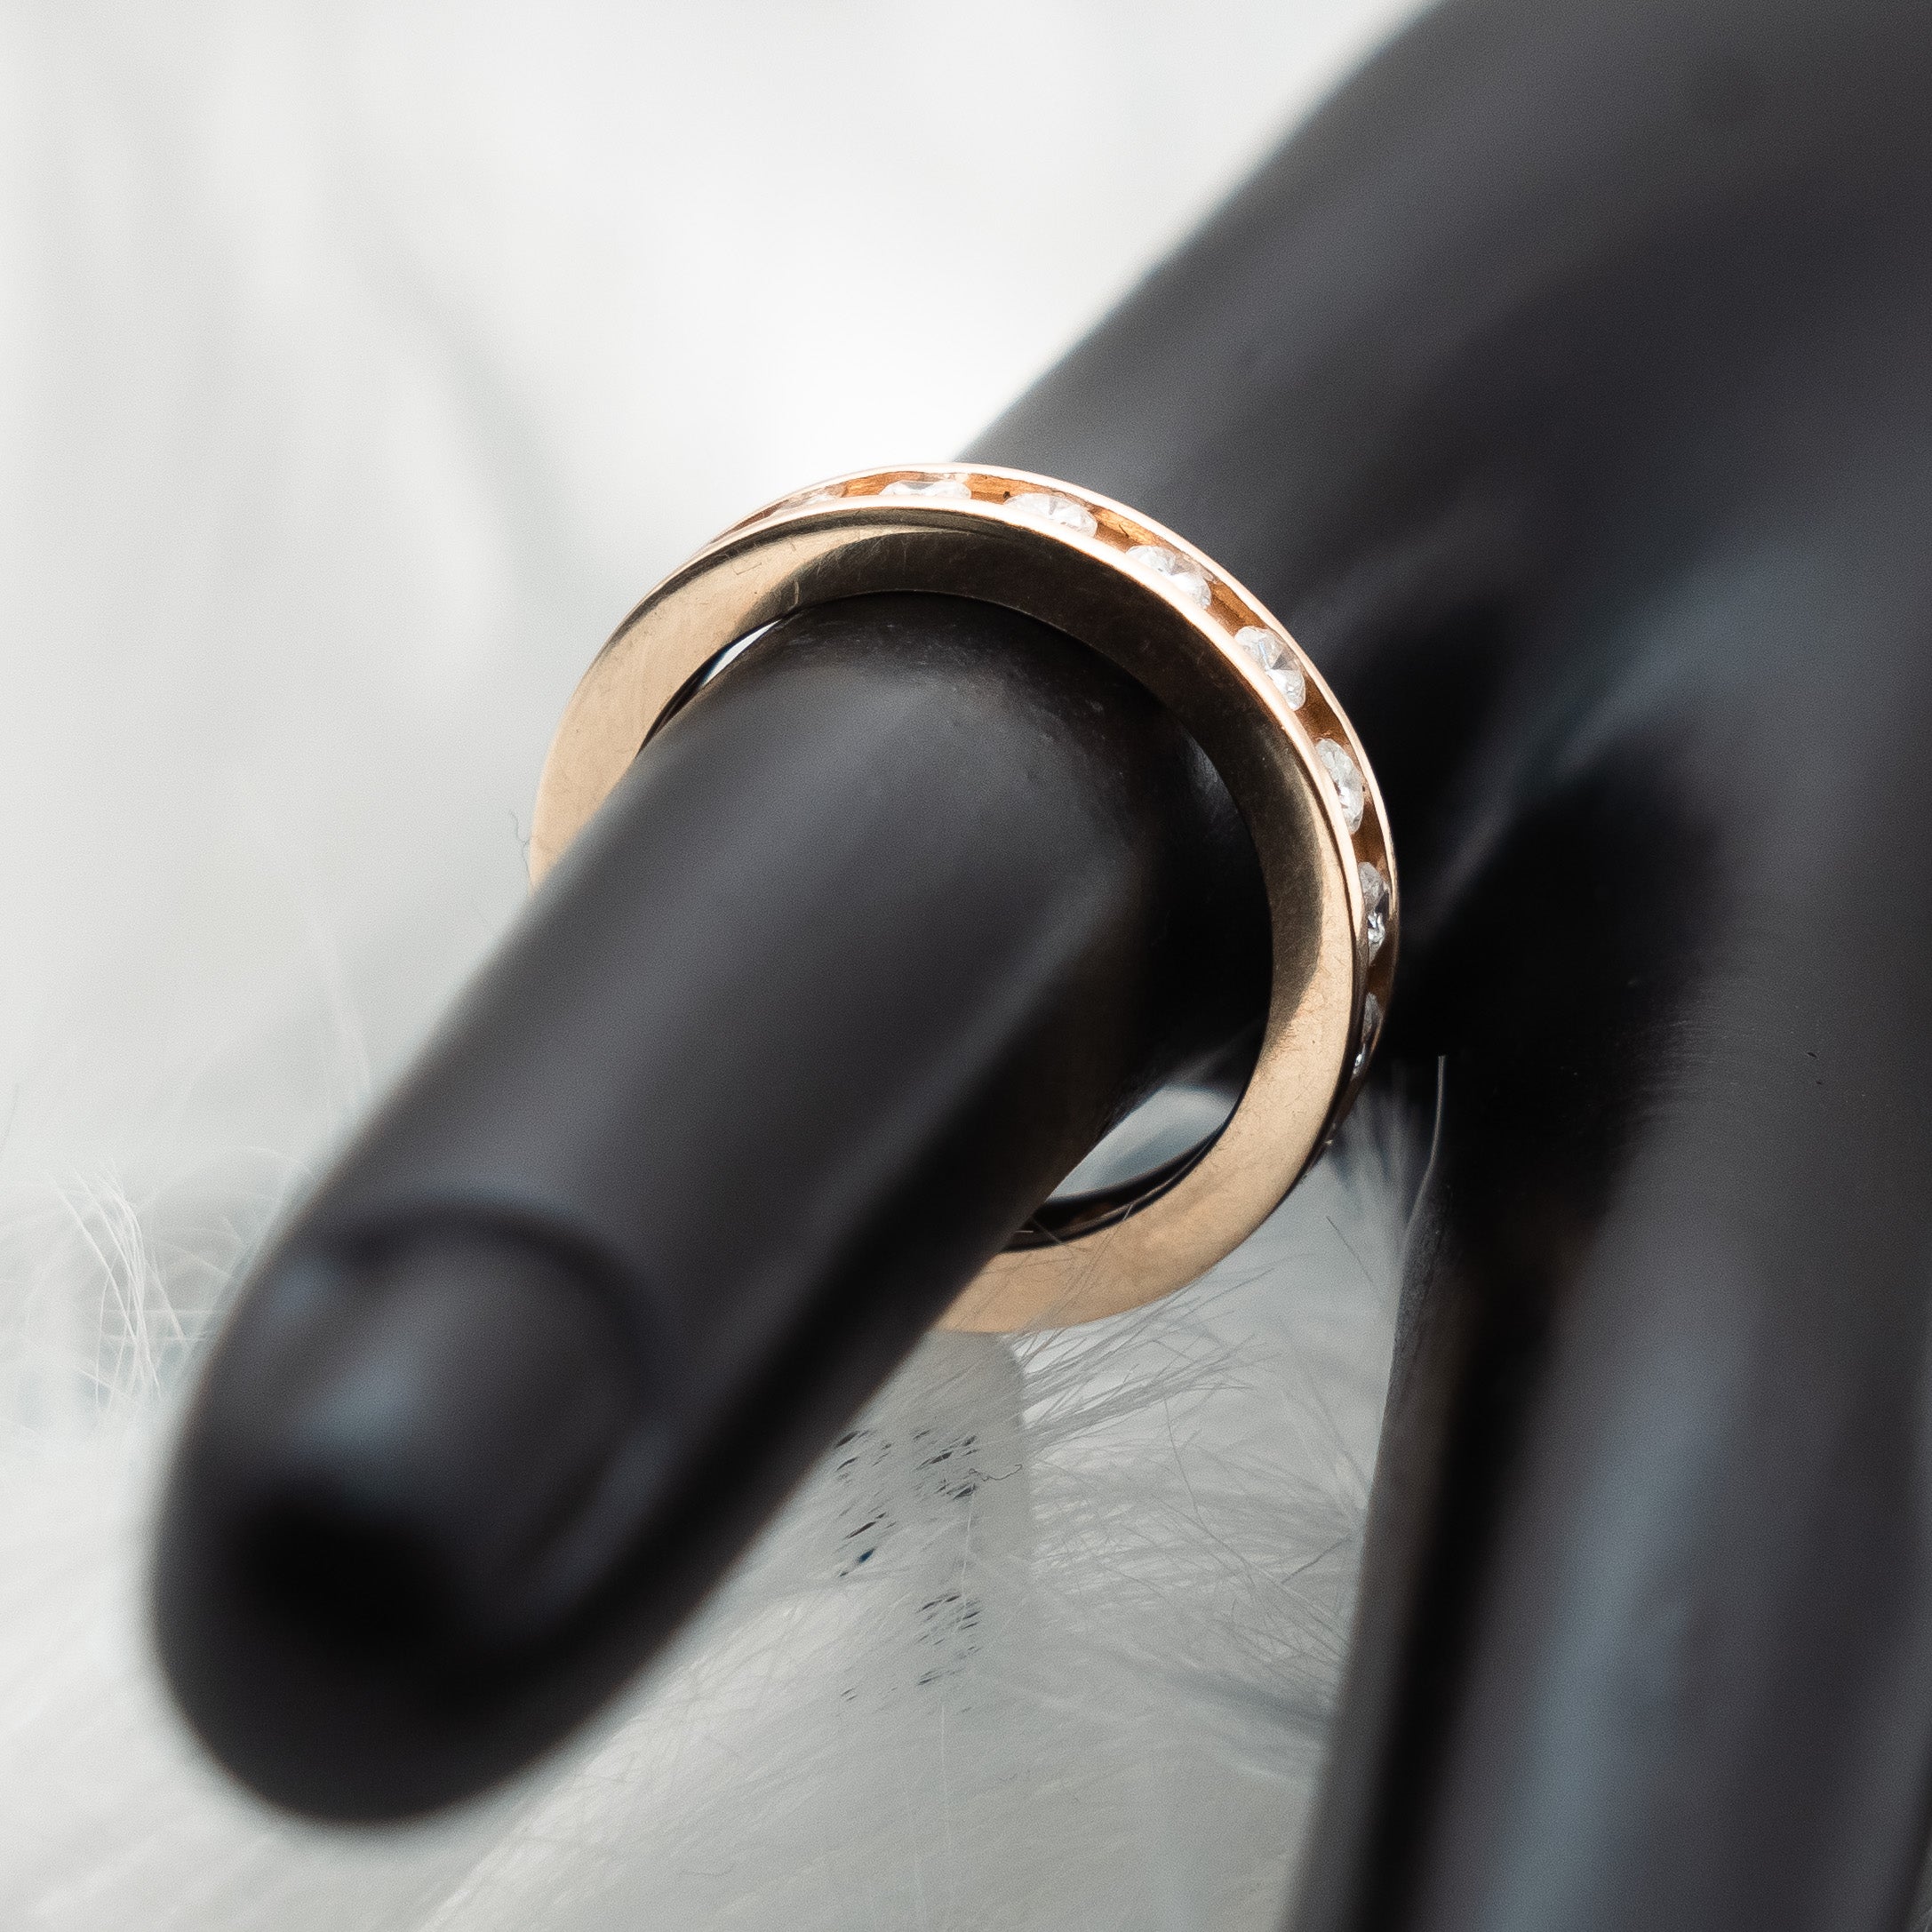 Infinite Diamonds Engagement Ring 14K White Gold / 4.3gr / Size 6